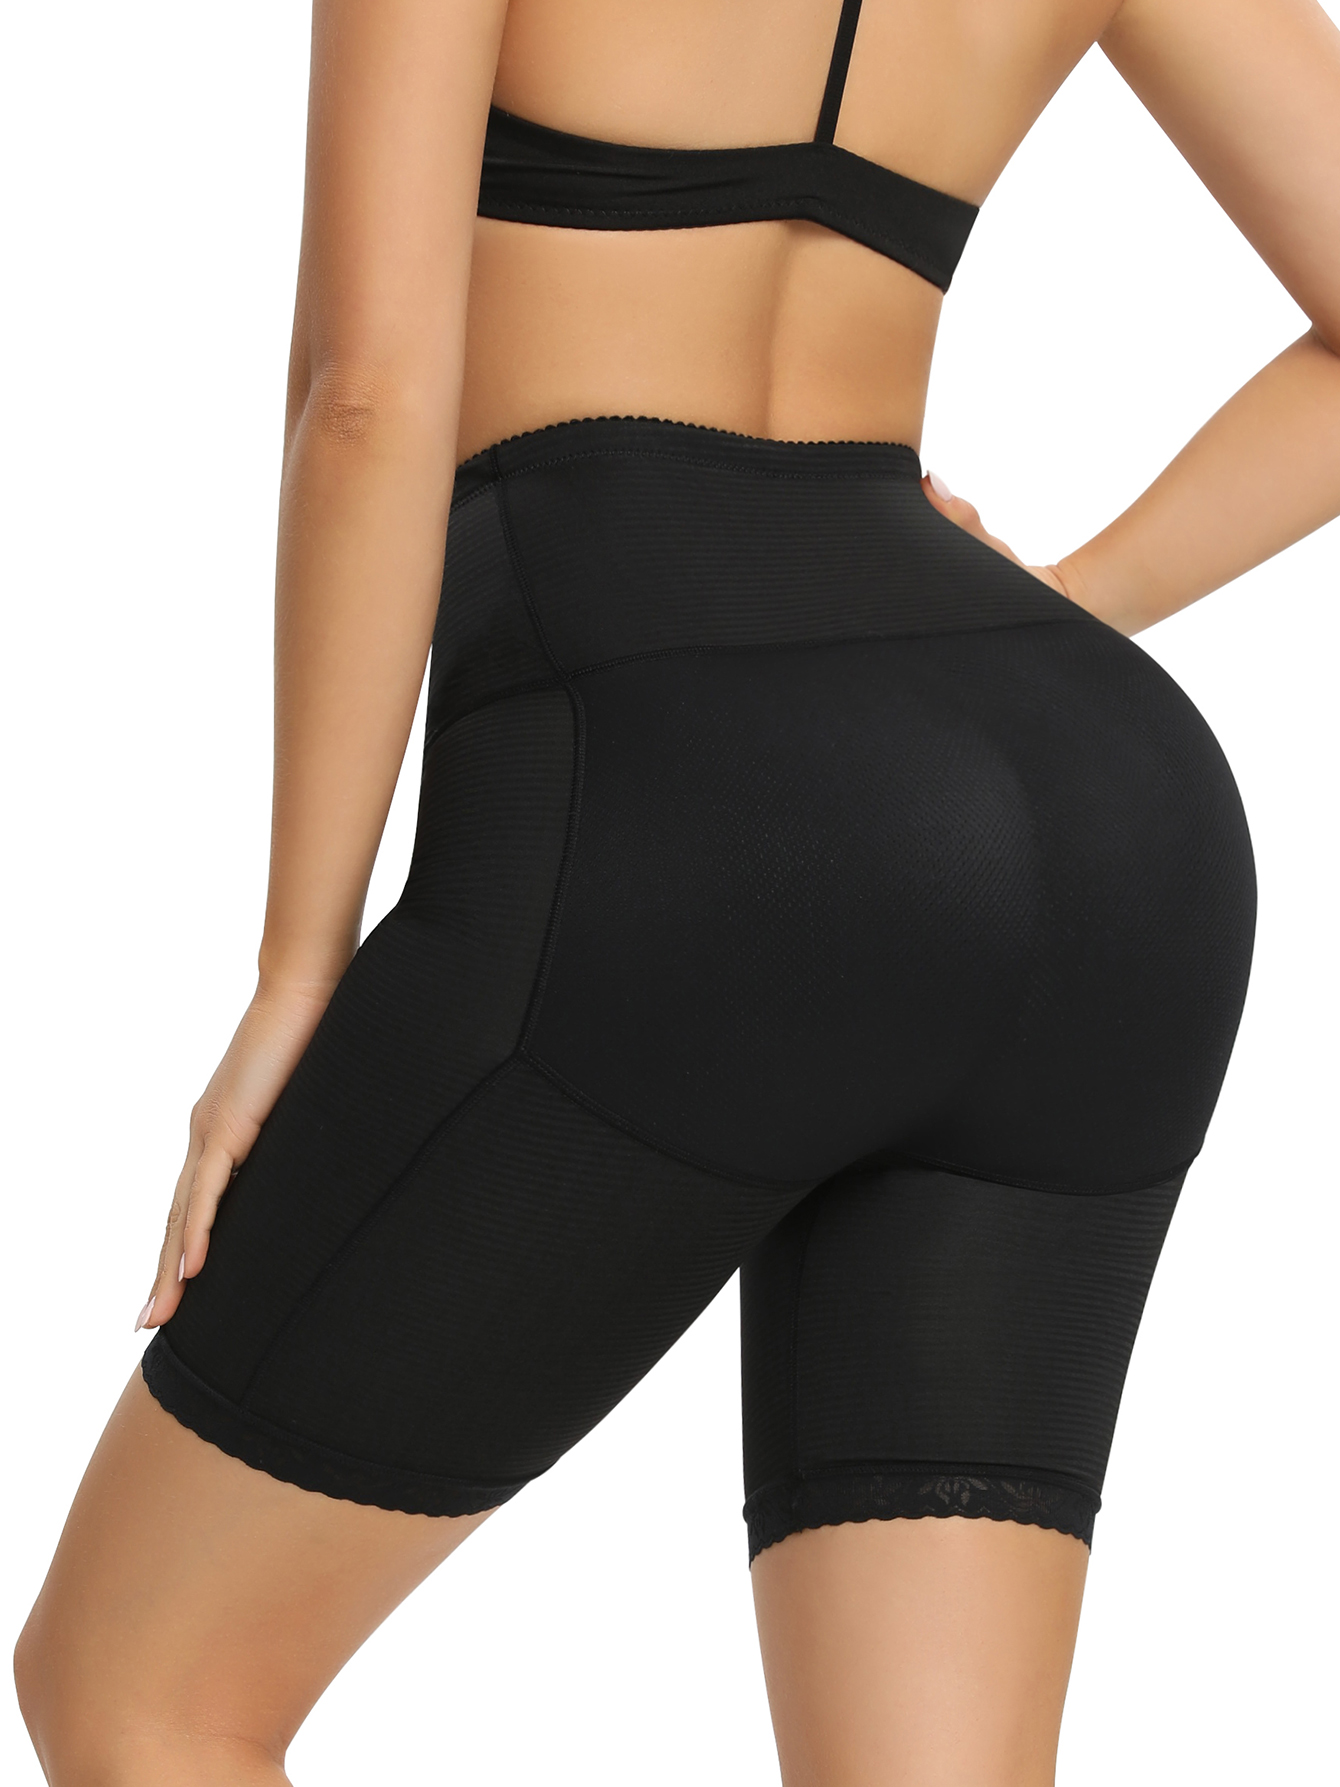 Women's Firm Control Hip Enhancer Shaper Panties - Butt Lift Spanx